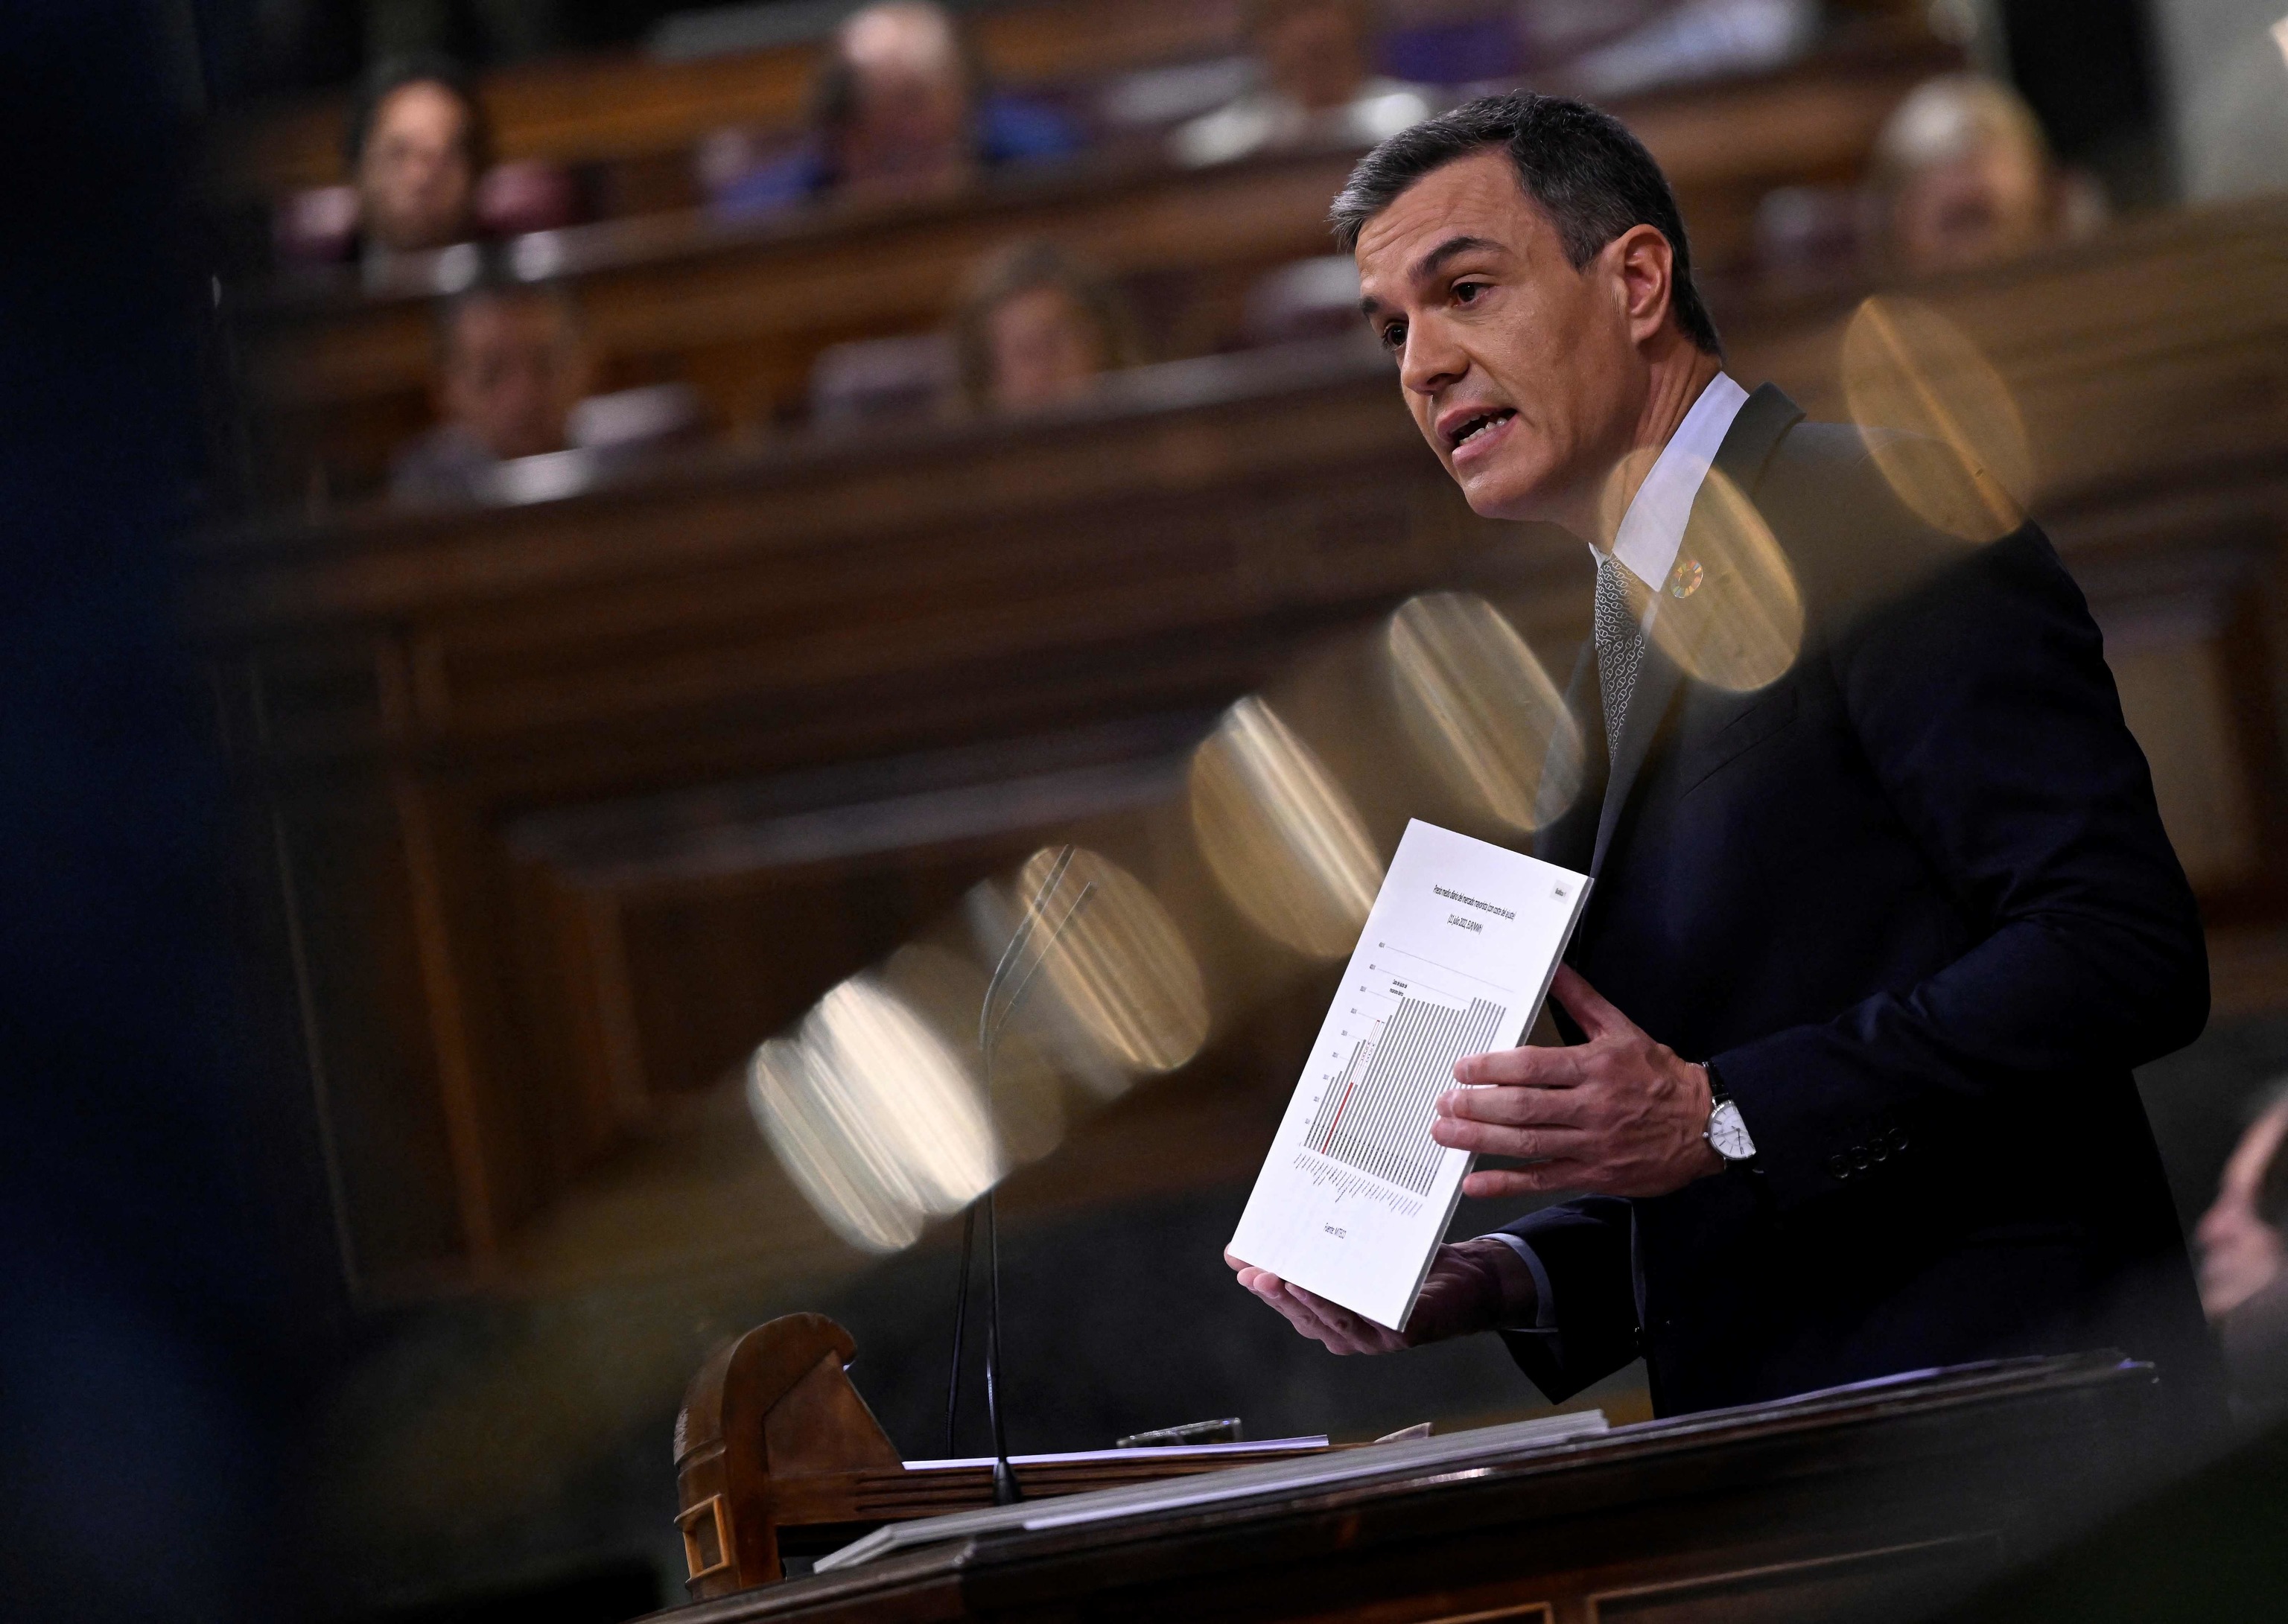 El Ibex se desploma durante el discurso de Sánchez y el nuevo impuesto a los bancos les hace perder hasta un 8%